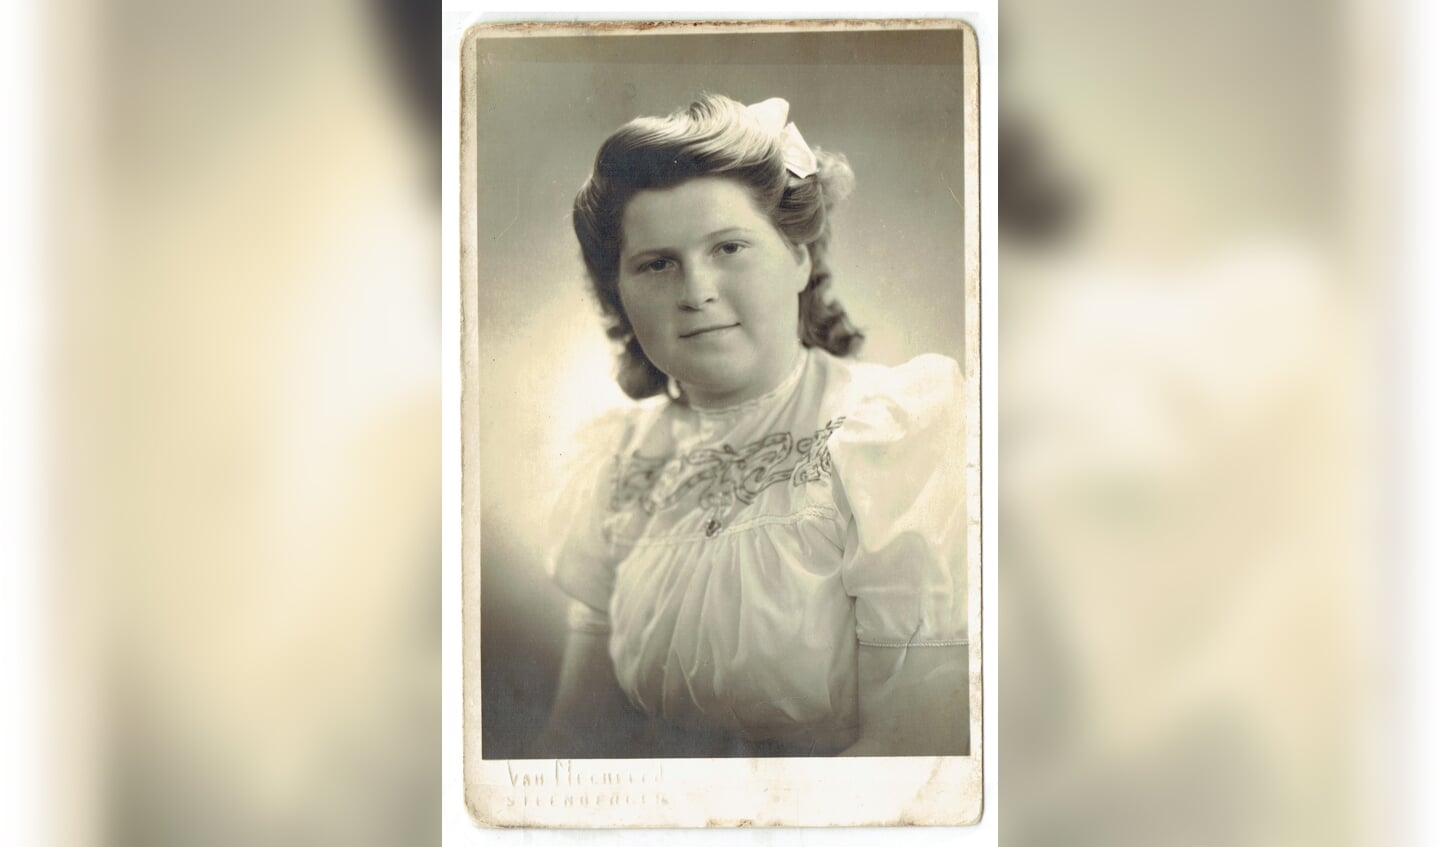  Dit is een oude foto van Koosje Meester, op 16 jarige leeftijd. Haar blouse was gemaakt van parachute stof. 